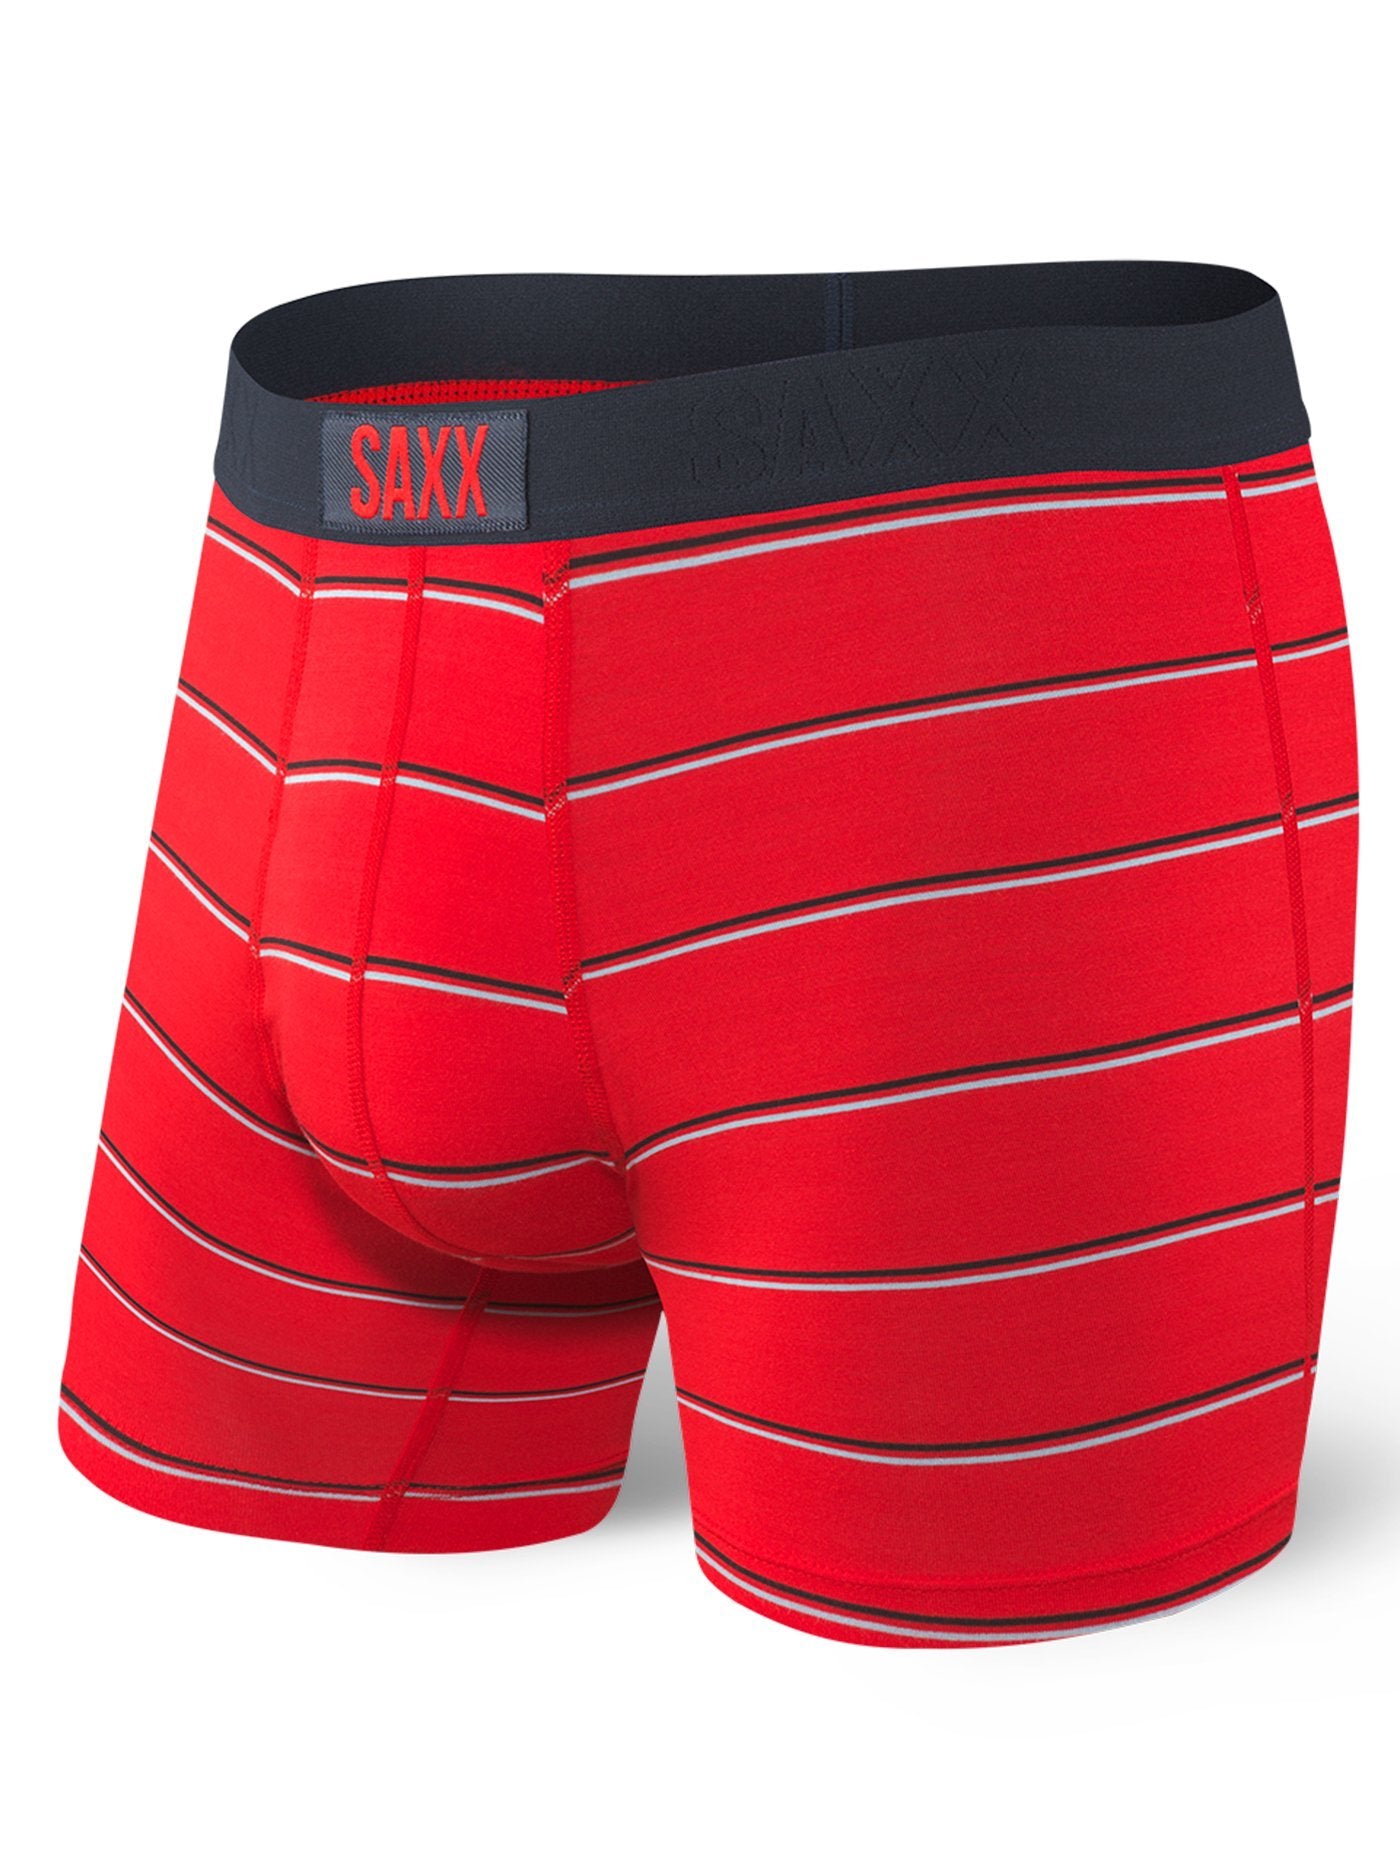 Saxx Underwear Vibe Slim Red Shallow